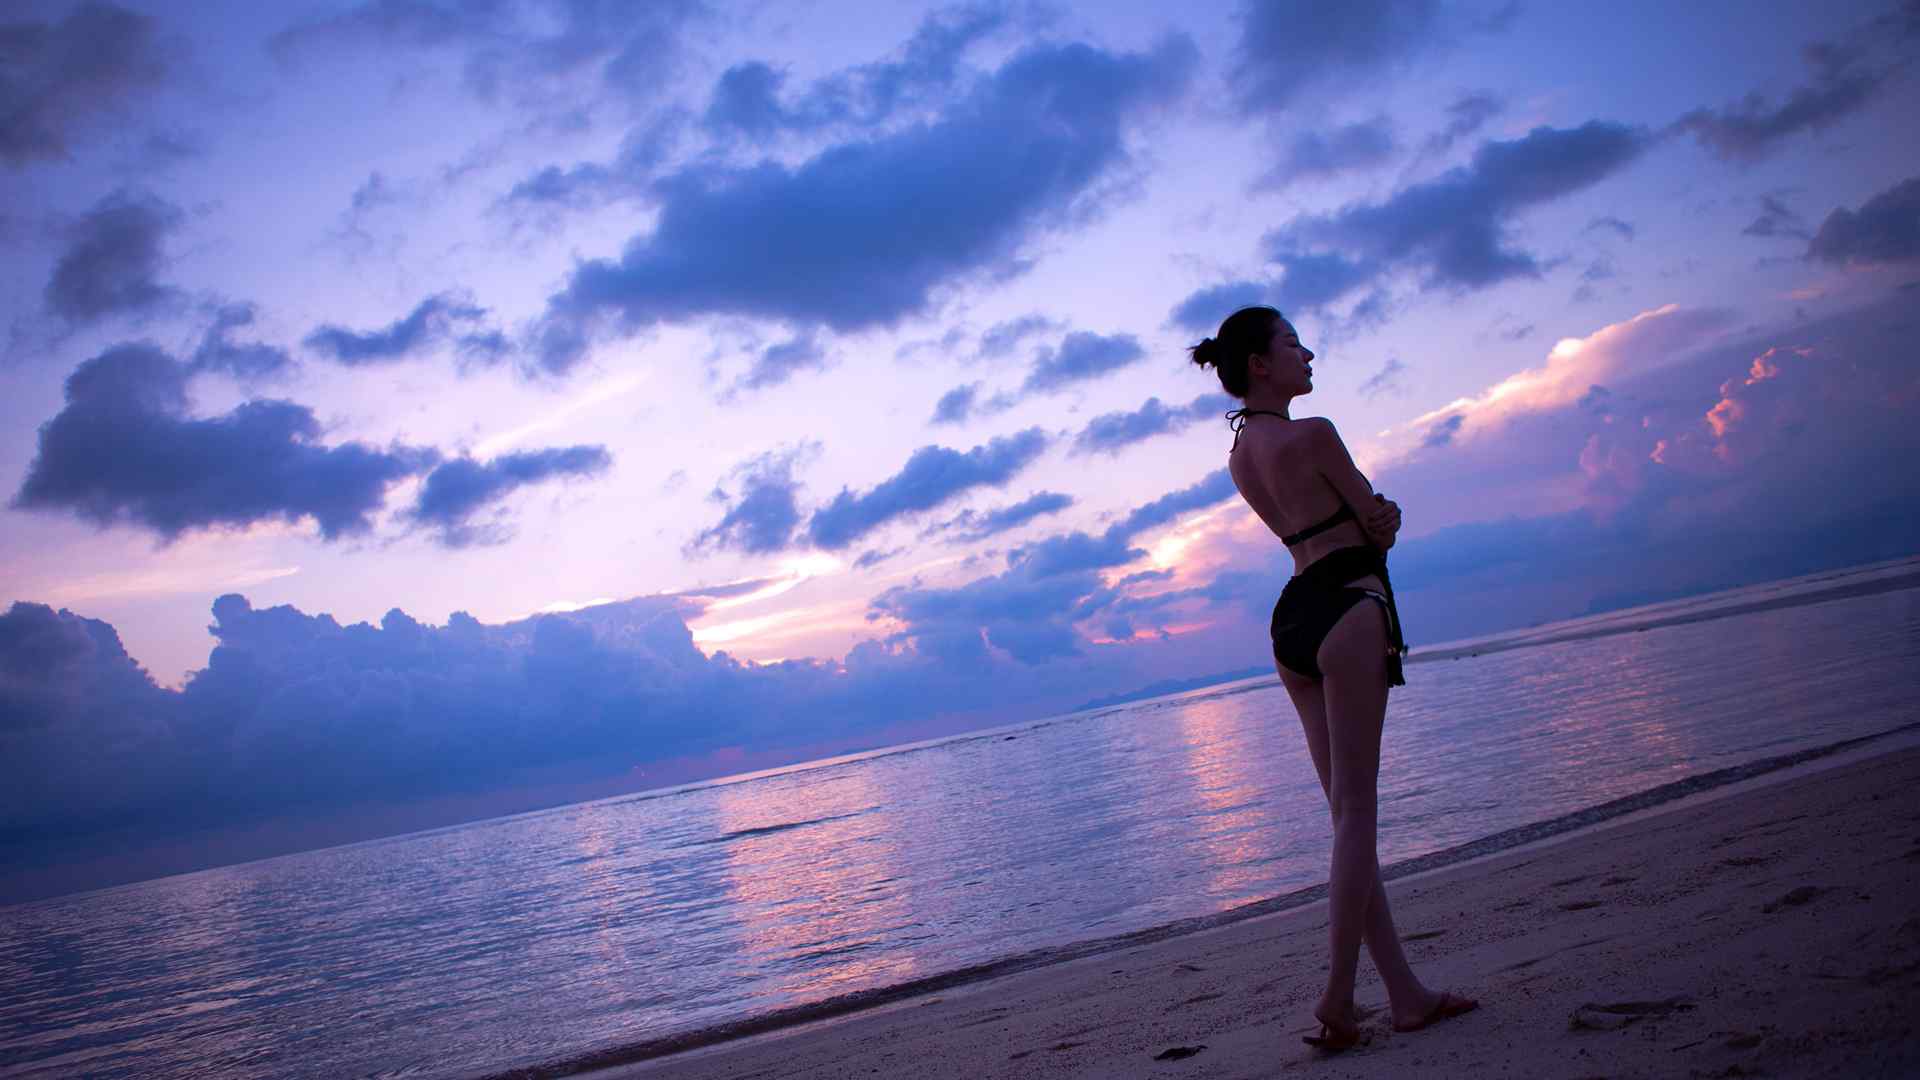 性感美女壁纸海边海滩比基尼美女慕羽茜壁纸性感美腿美女制服艺术摄影